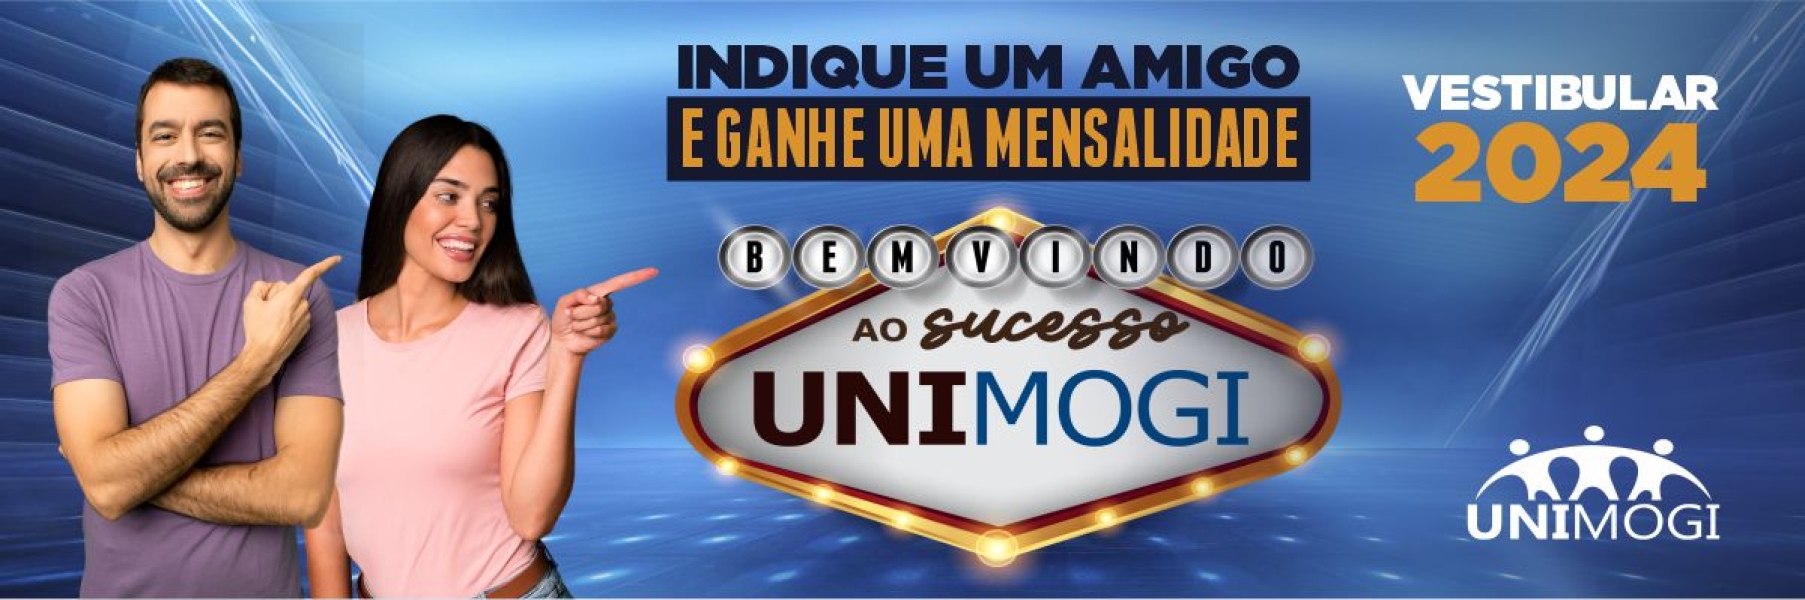 Banner Unimogi